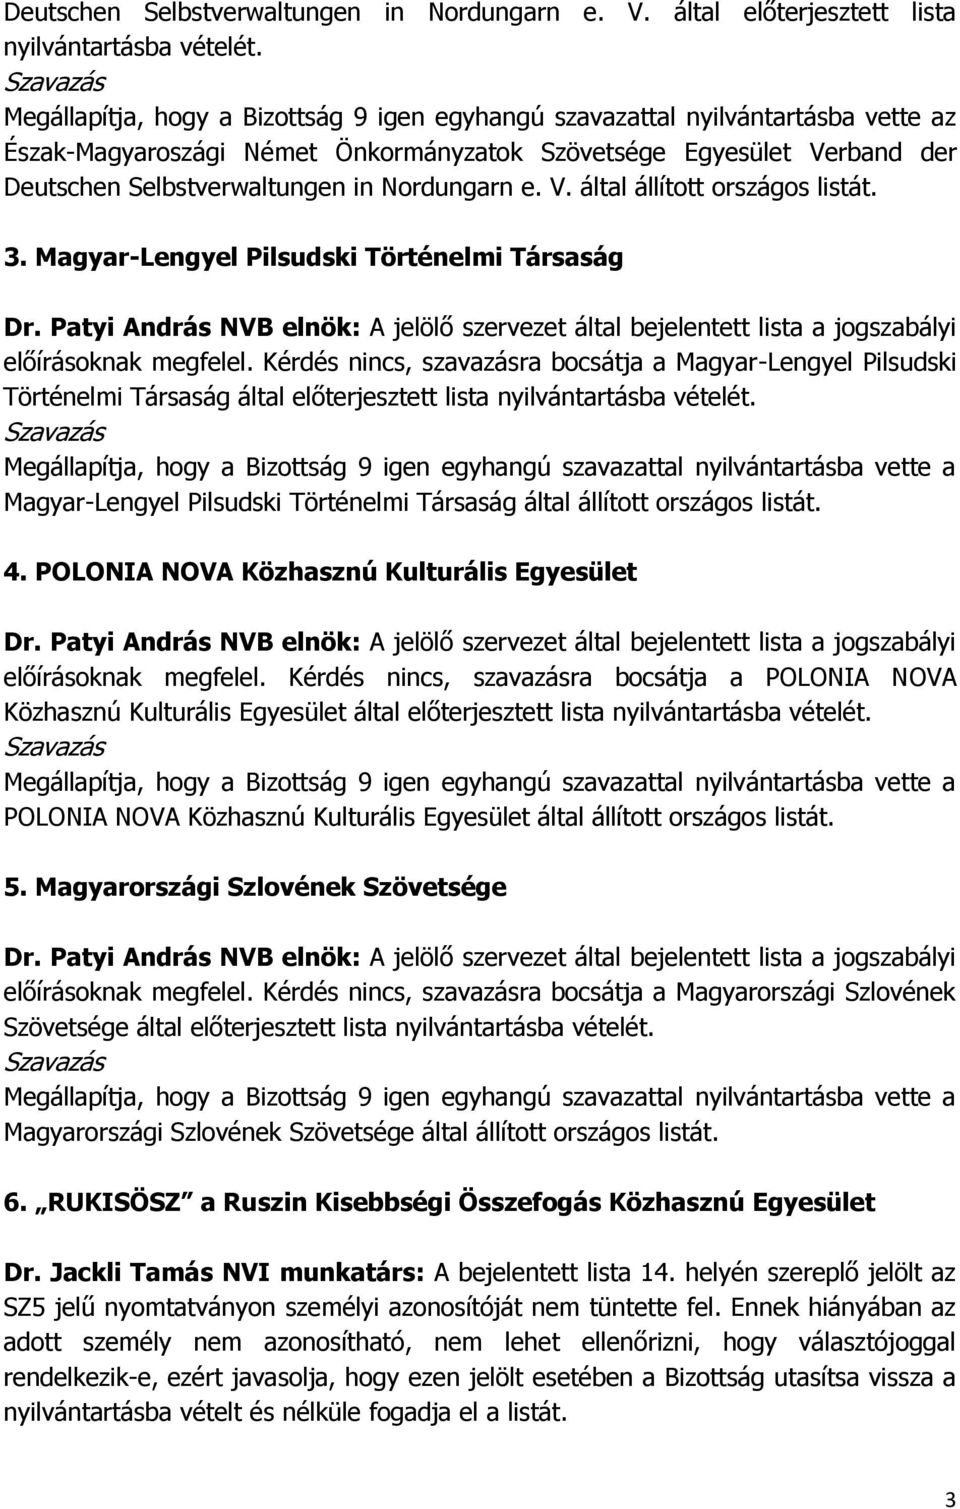 Magyar-Lengyel Pilsudski Történelmi Társaság előírásoknak megfelel. Kérdés nincs, szavazásra bocsátja a Magyar-Lengyel Pilsudski Történelmi Társaság által előterjesztett lista nyilvántartásba vételét.